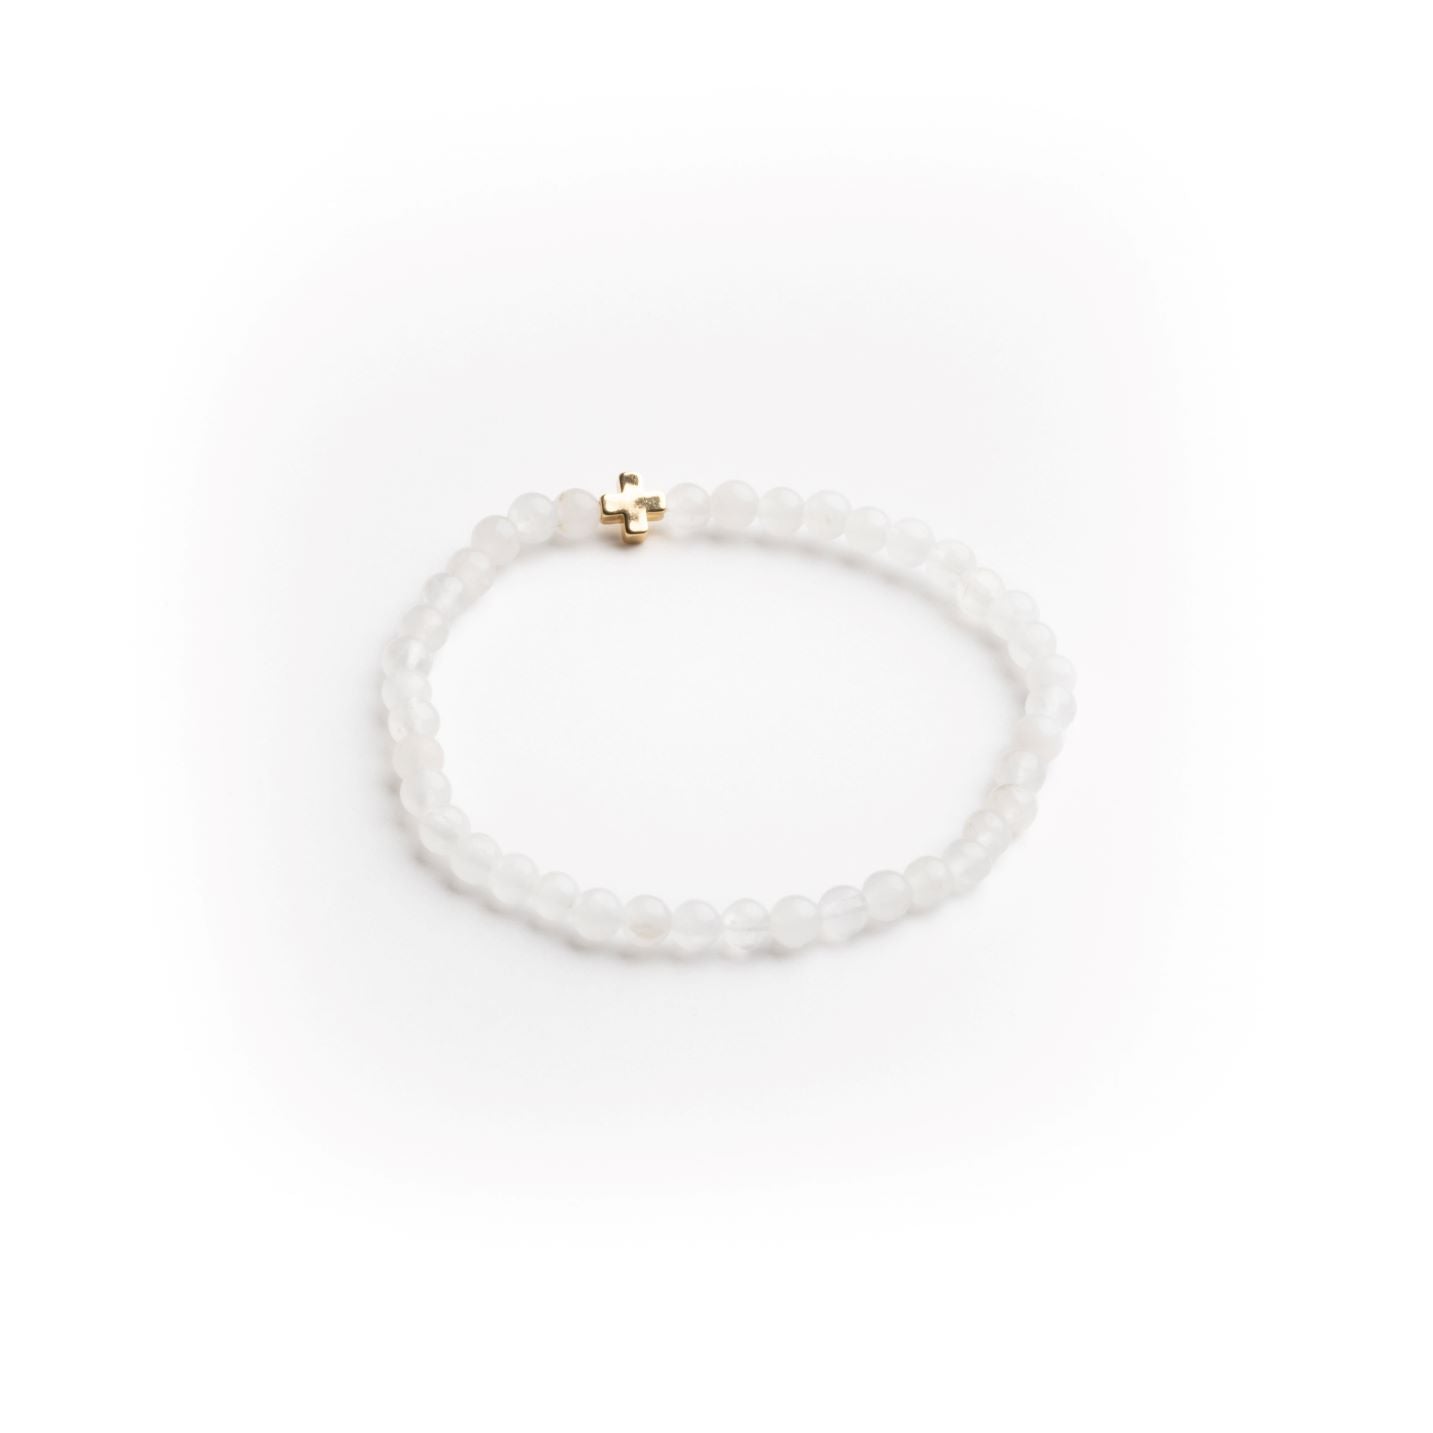 White Glass Bead Cross Bracelet - 4mm